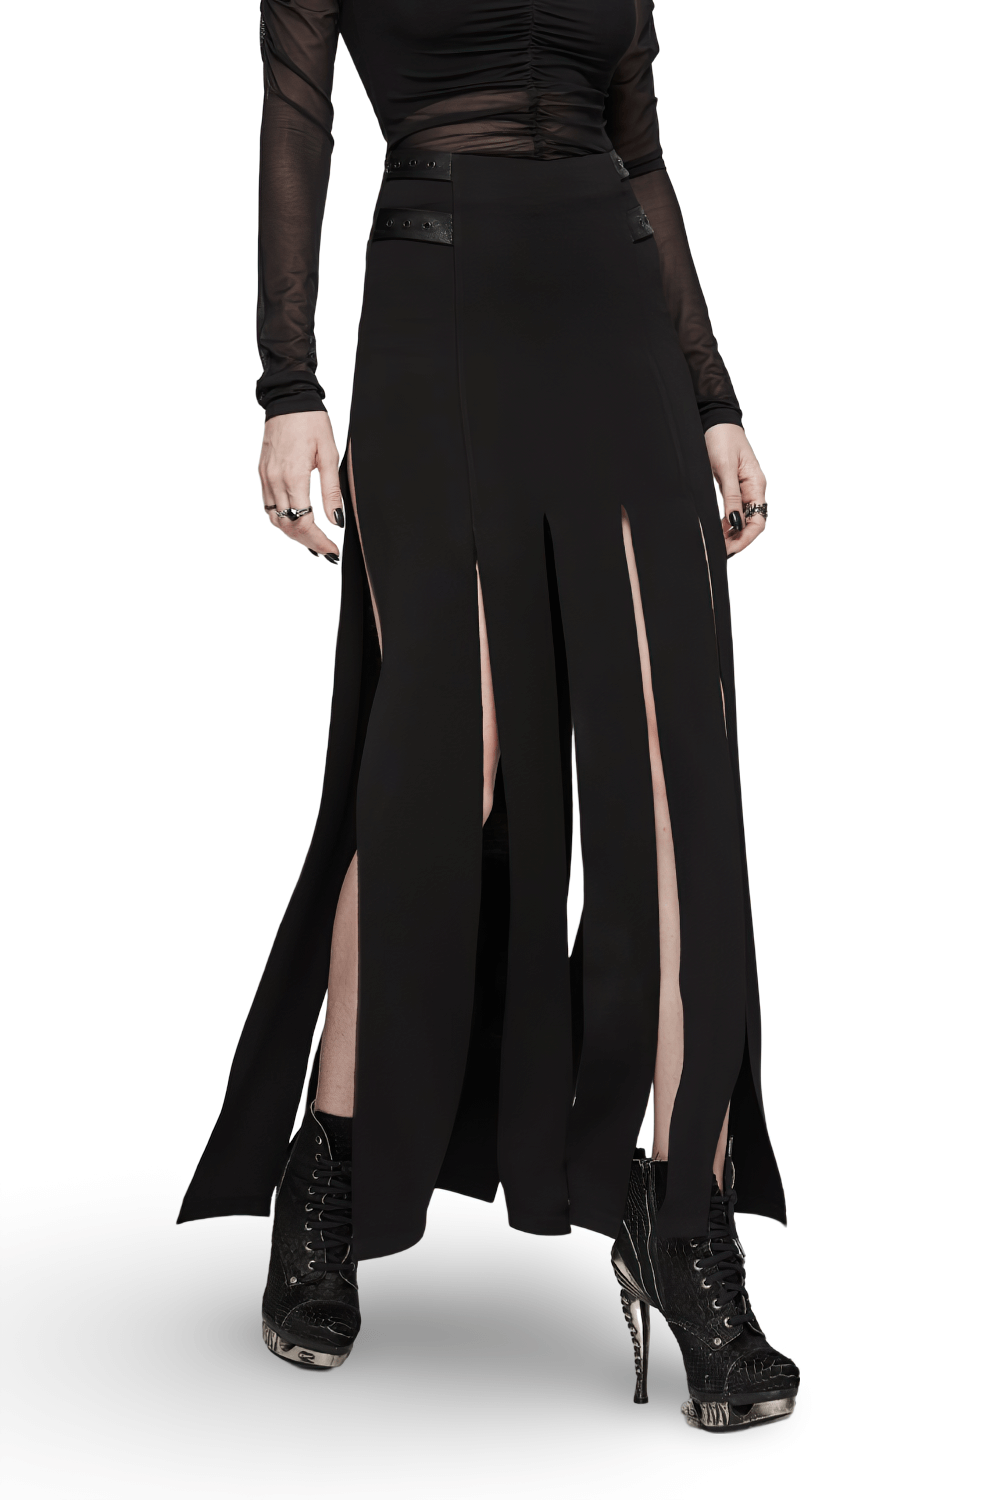 Stylish Punk Black Long Split Skirt-Fringe with Pokets